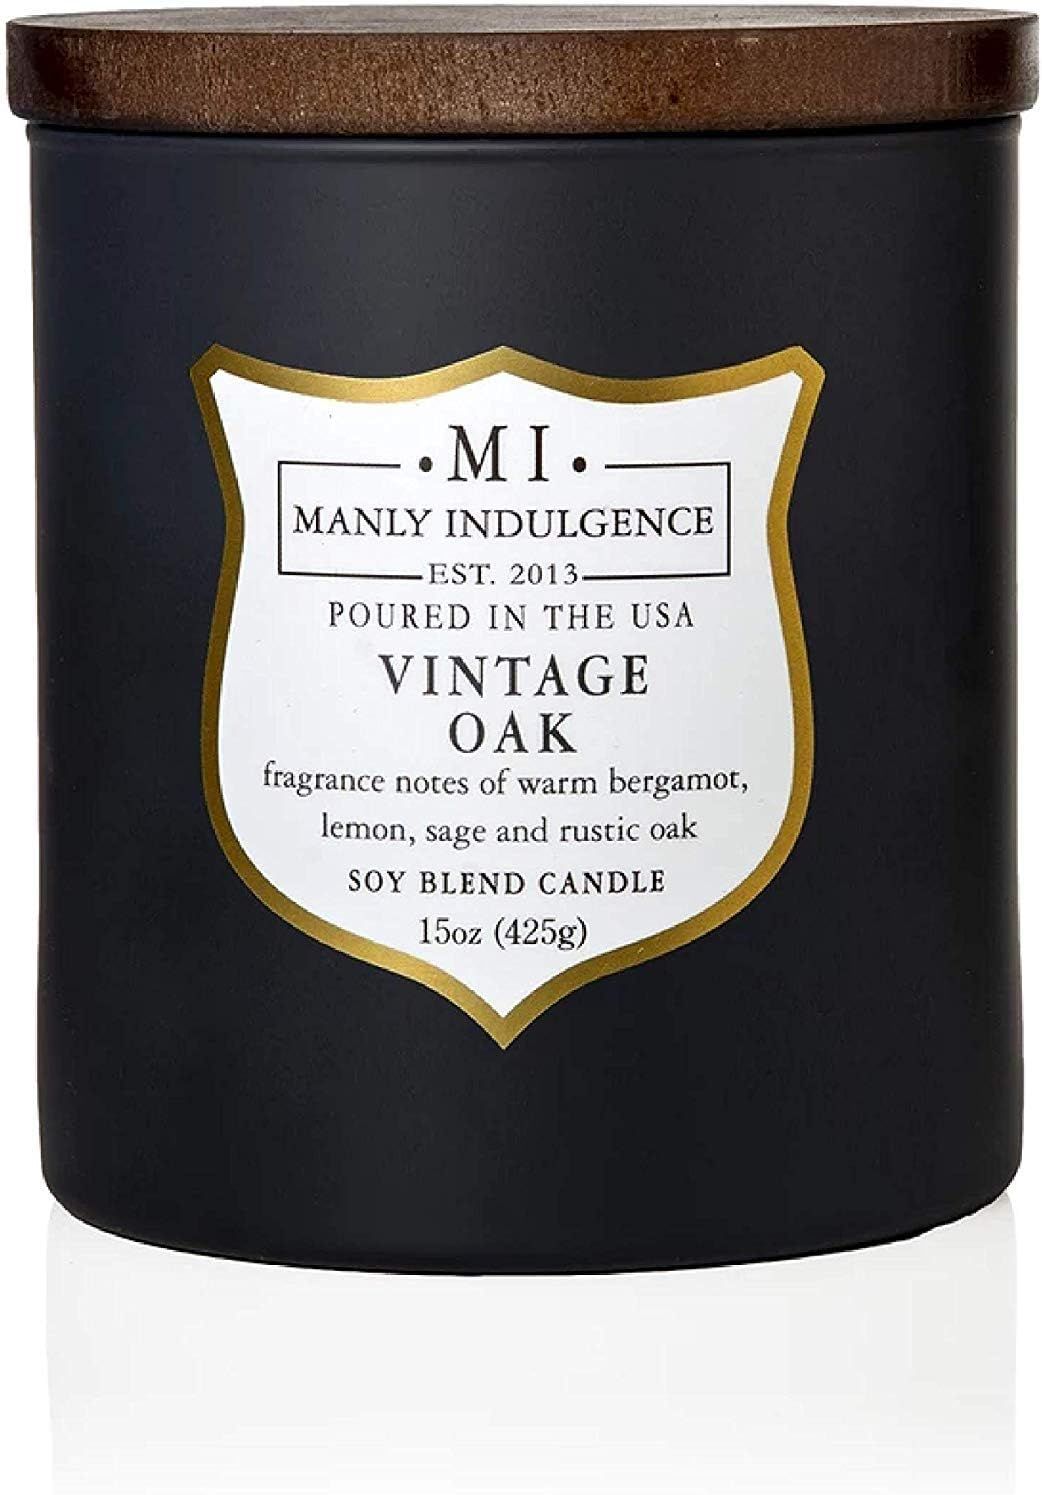 Manly Indulgence Vintage Oak Scented Jar Candle, 15 Oz, Grey | Amazon (US)